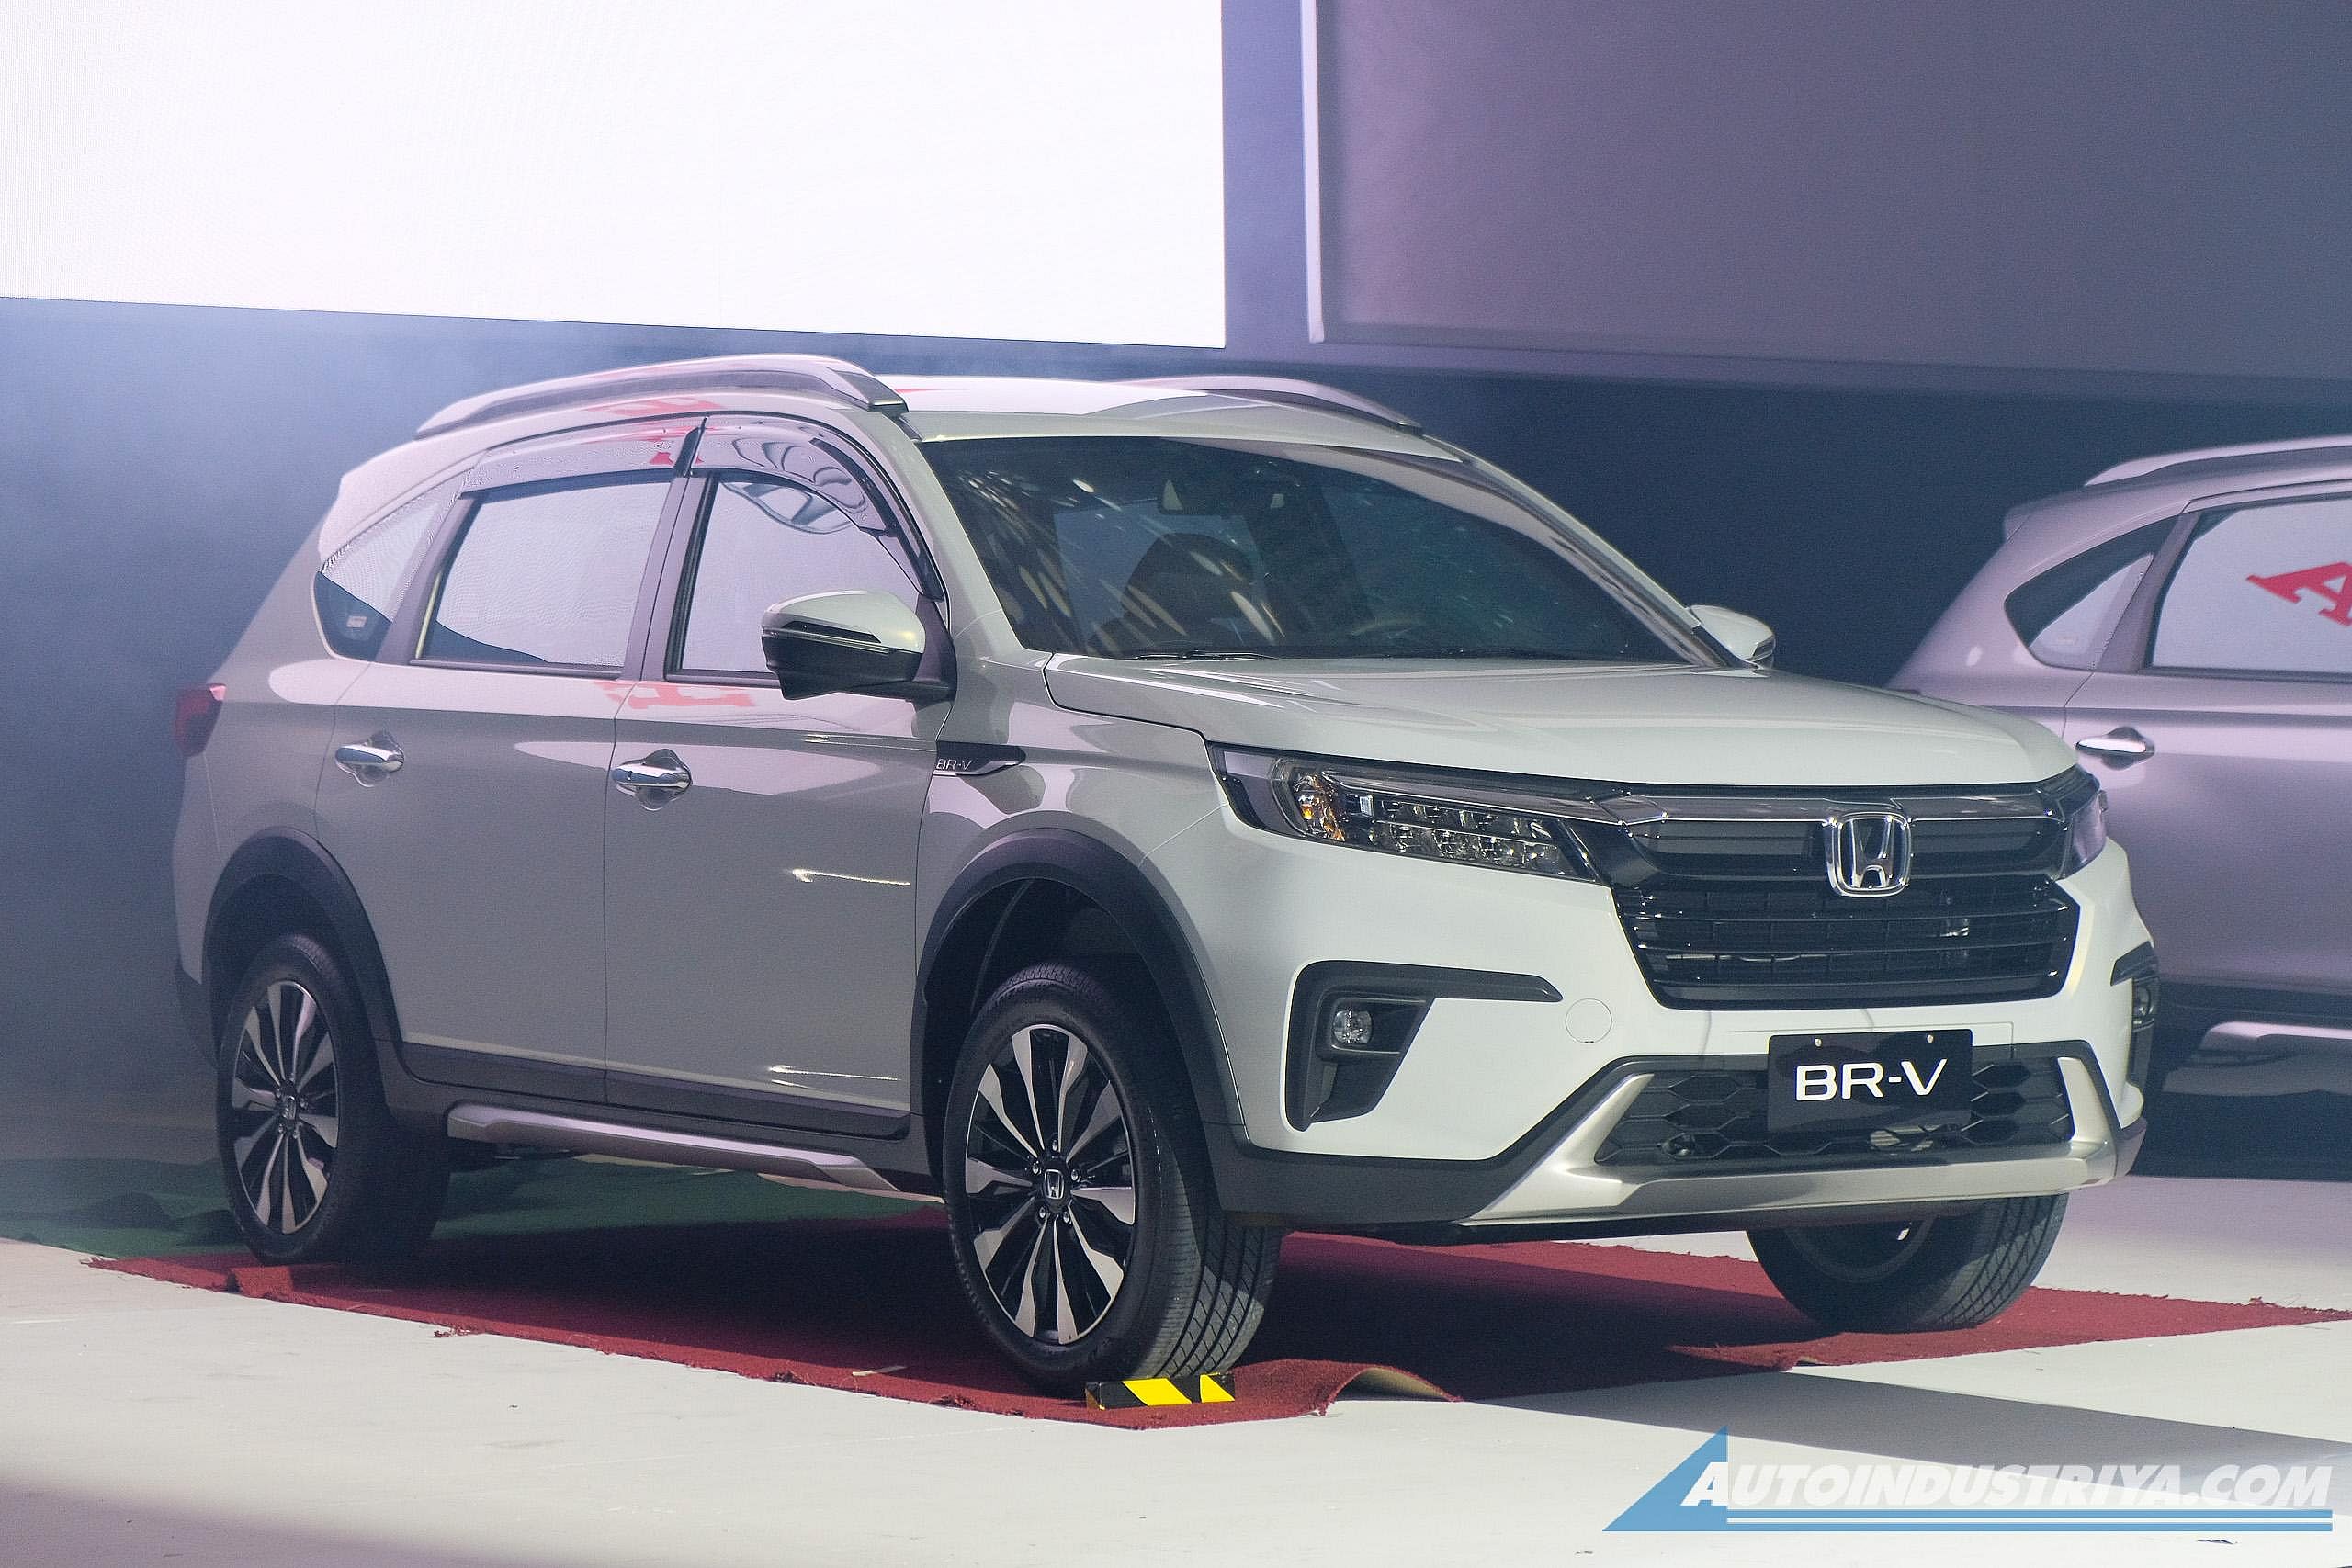 MPV 7 chỗ Honda BRV ra mắt Thái Lan giá quy đổi từ 600 triệu đồng   AutoFun